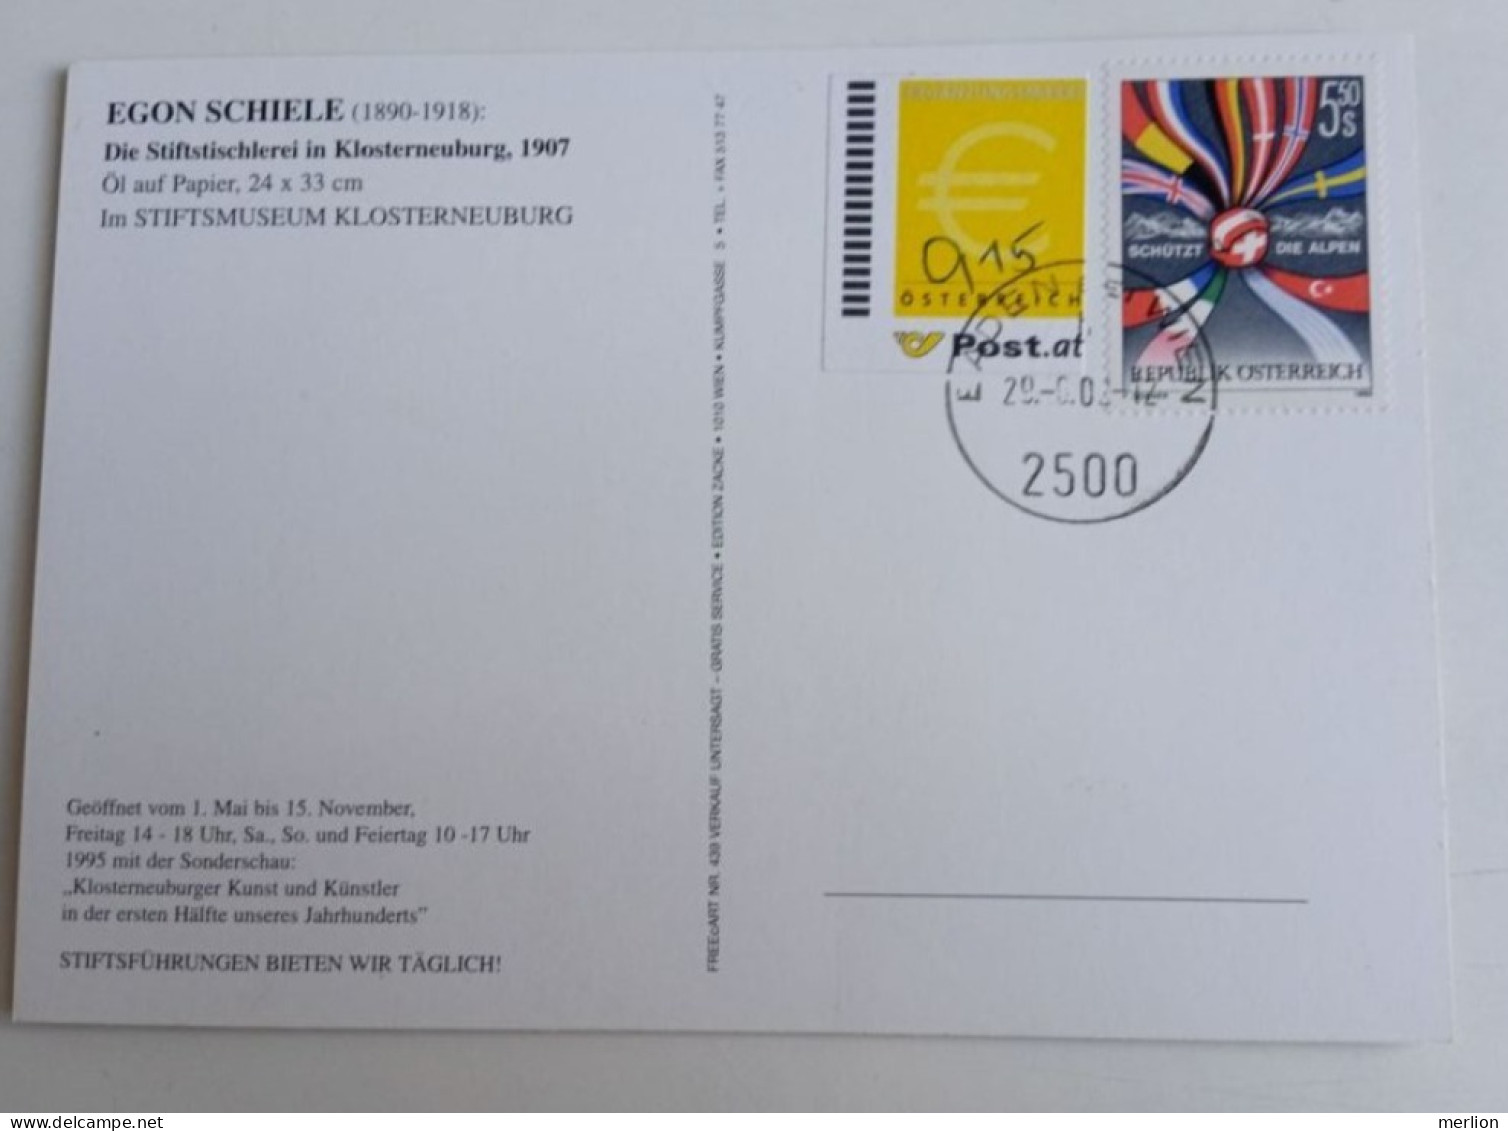 D203018  Österreich   Postkarte Vom 29.06.2002 Mit Ergänzungsmarke € 0,15  Mit Stempel  Baden Bei Wien - Brieven En Documenten